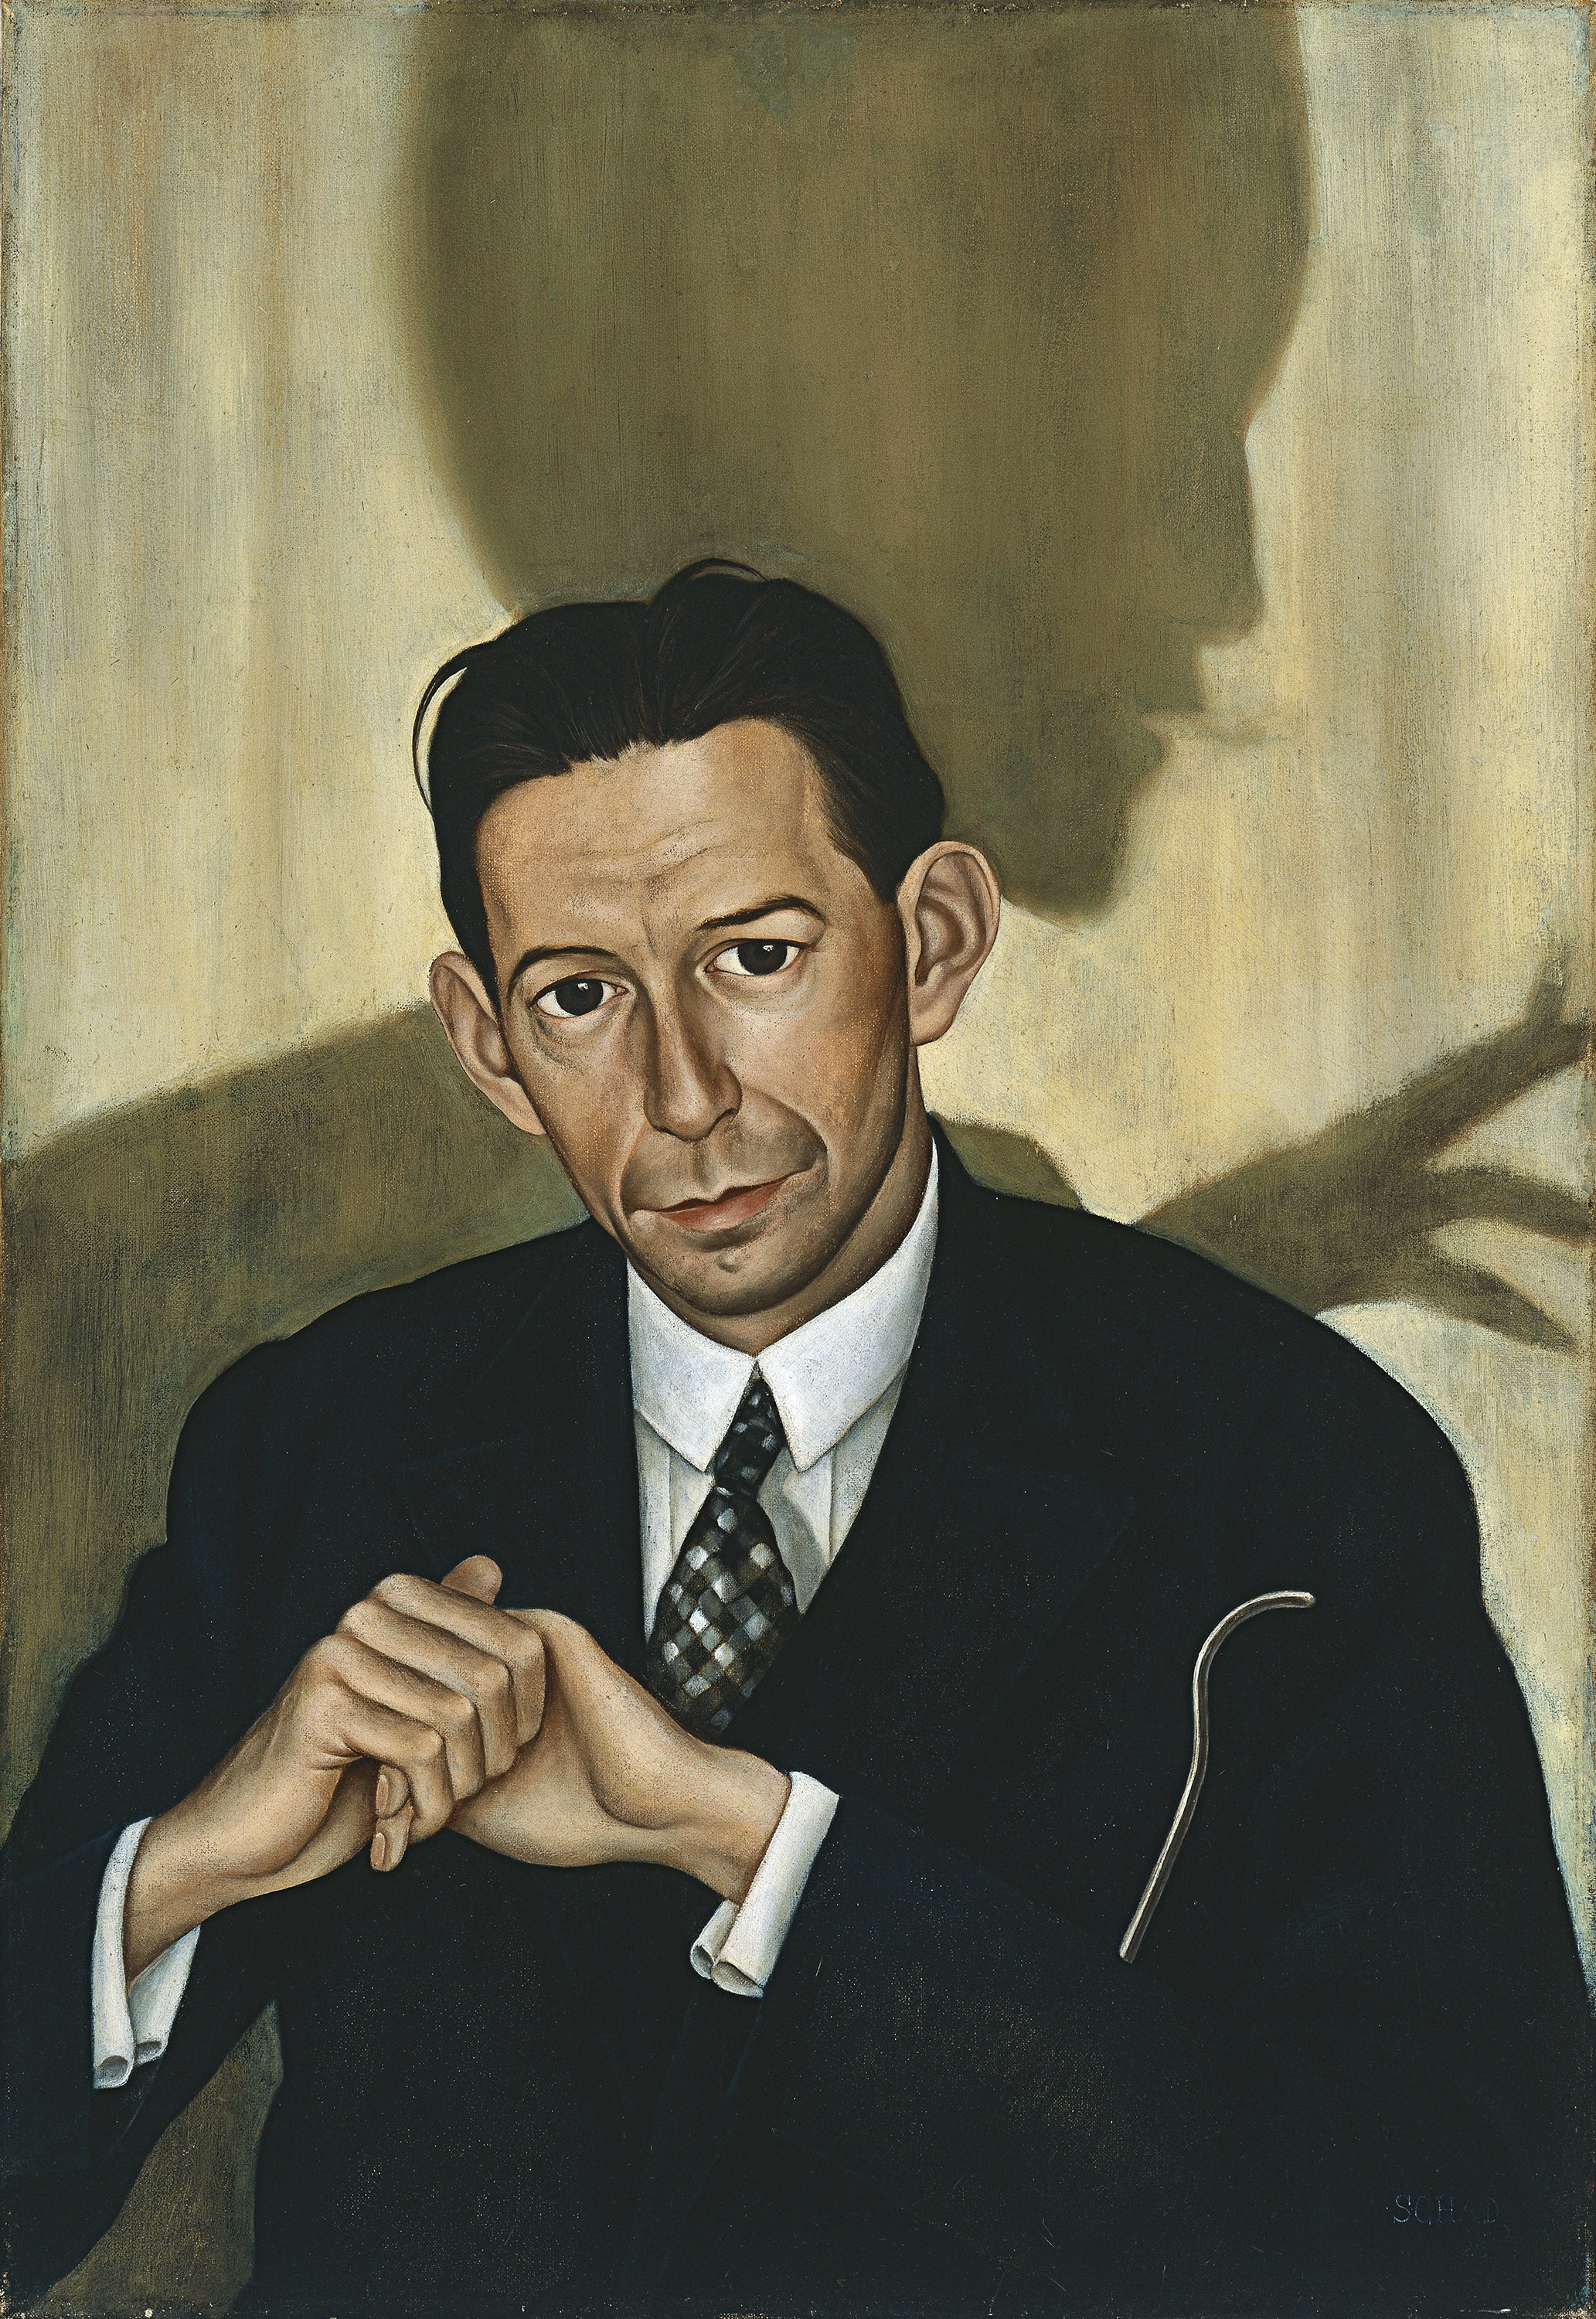 Retrato del Dr. Haustein. Christian Schad